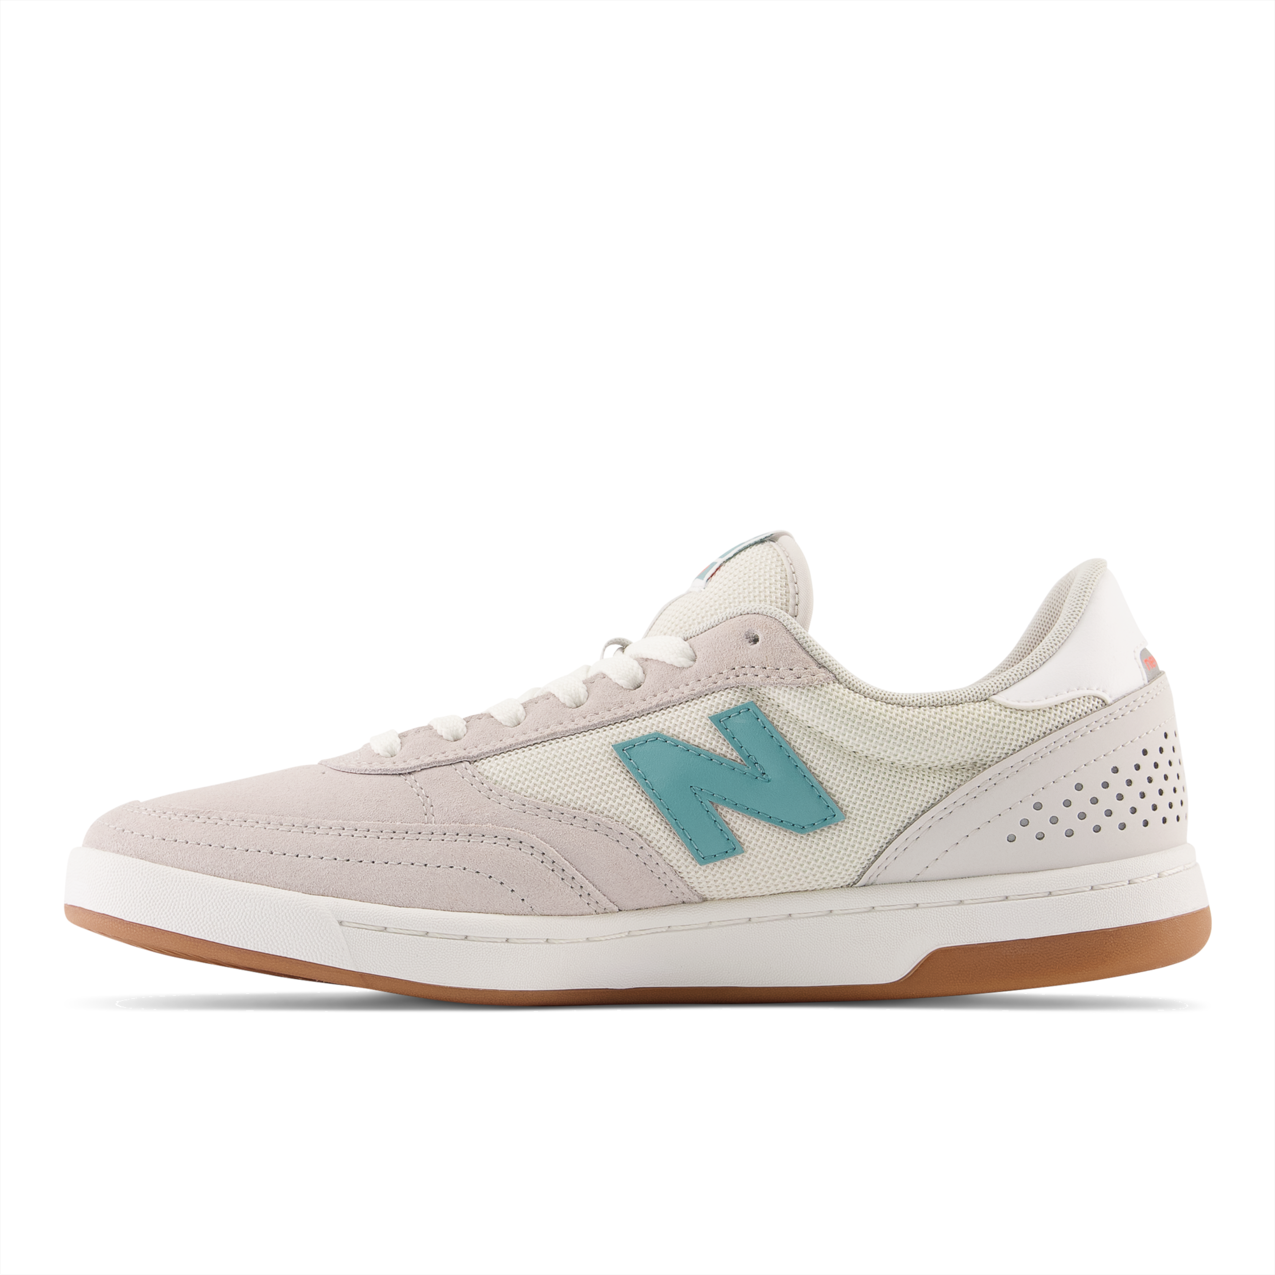 New Balance Numeric Men's 440 Light Grey Aqua Sea Shoes